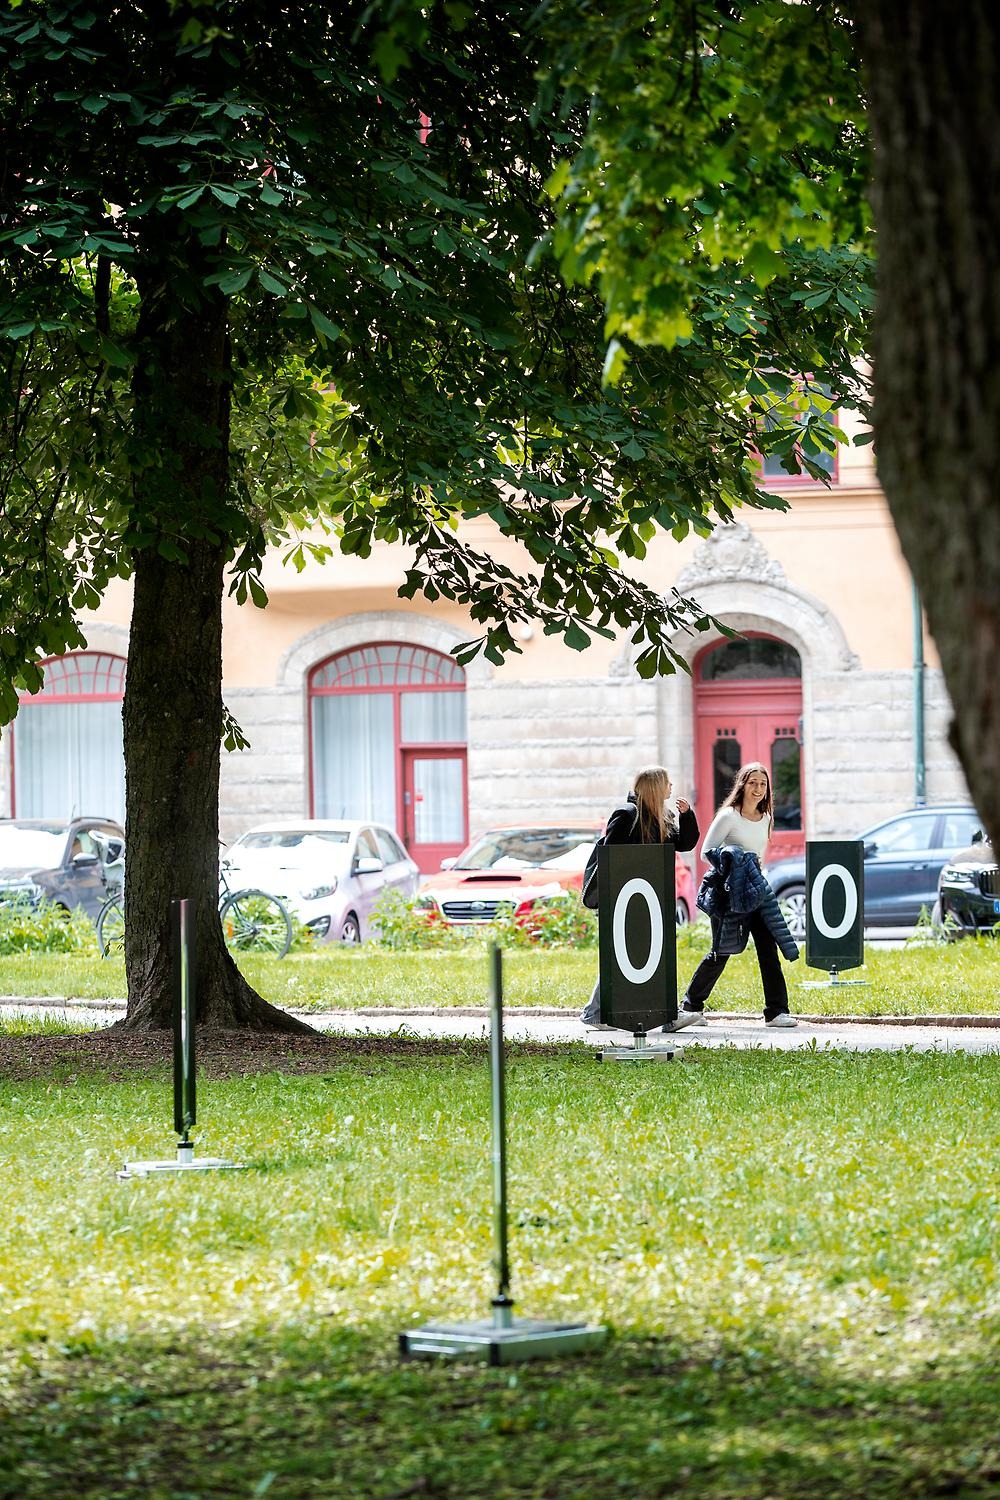 I en park är svarta trottoarskyltar med numrena 1 och 0 placerade. På bilden syns fyra skyltar och två personer som går förbi i bakgrunden.